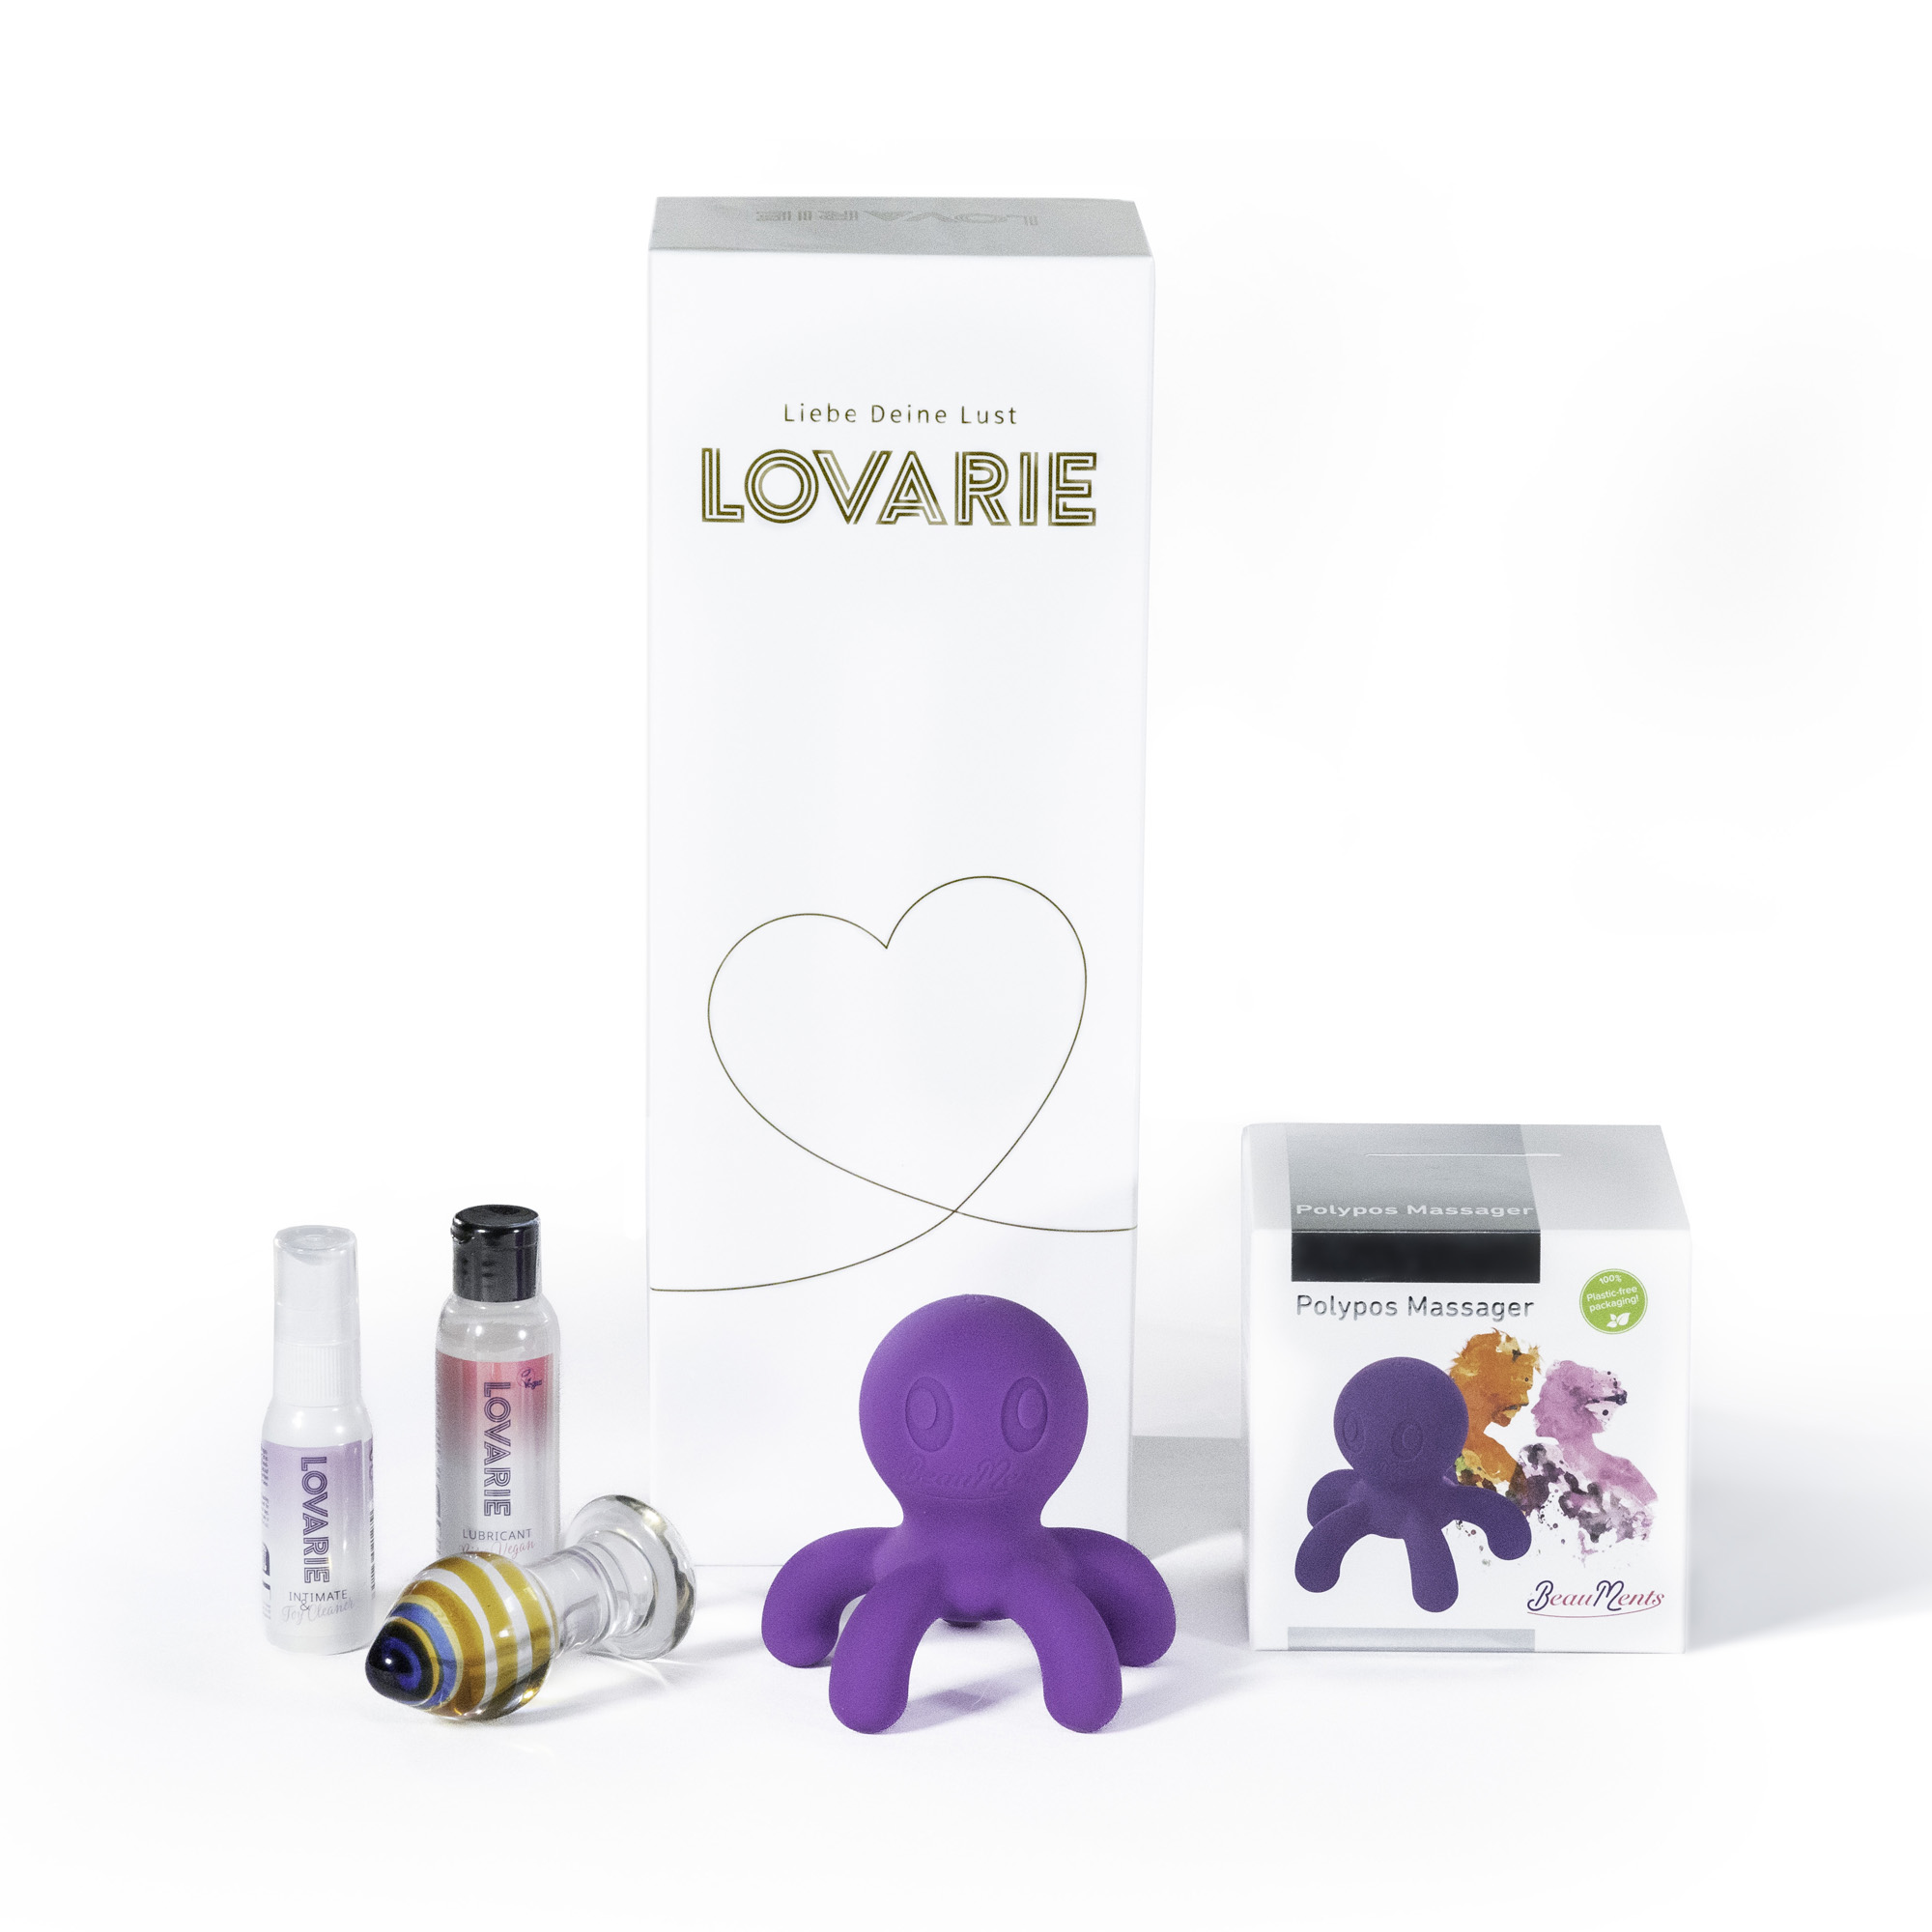 Love Toy Box "Liebe deine Lust"